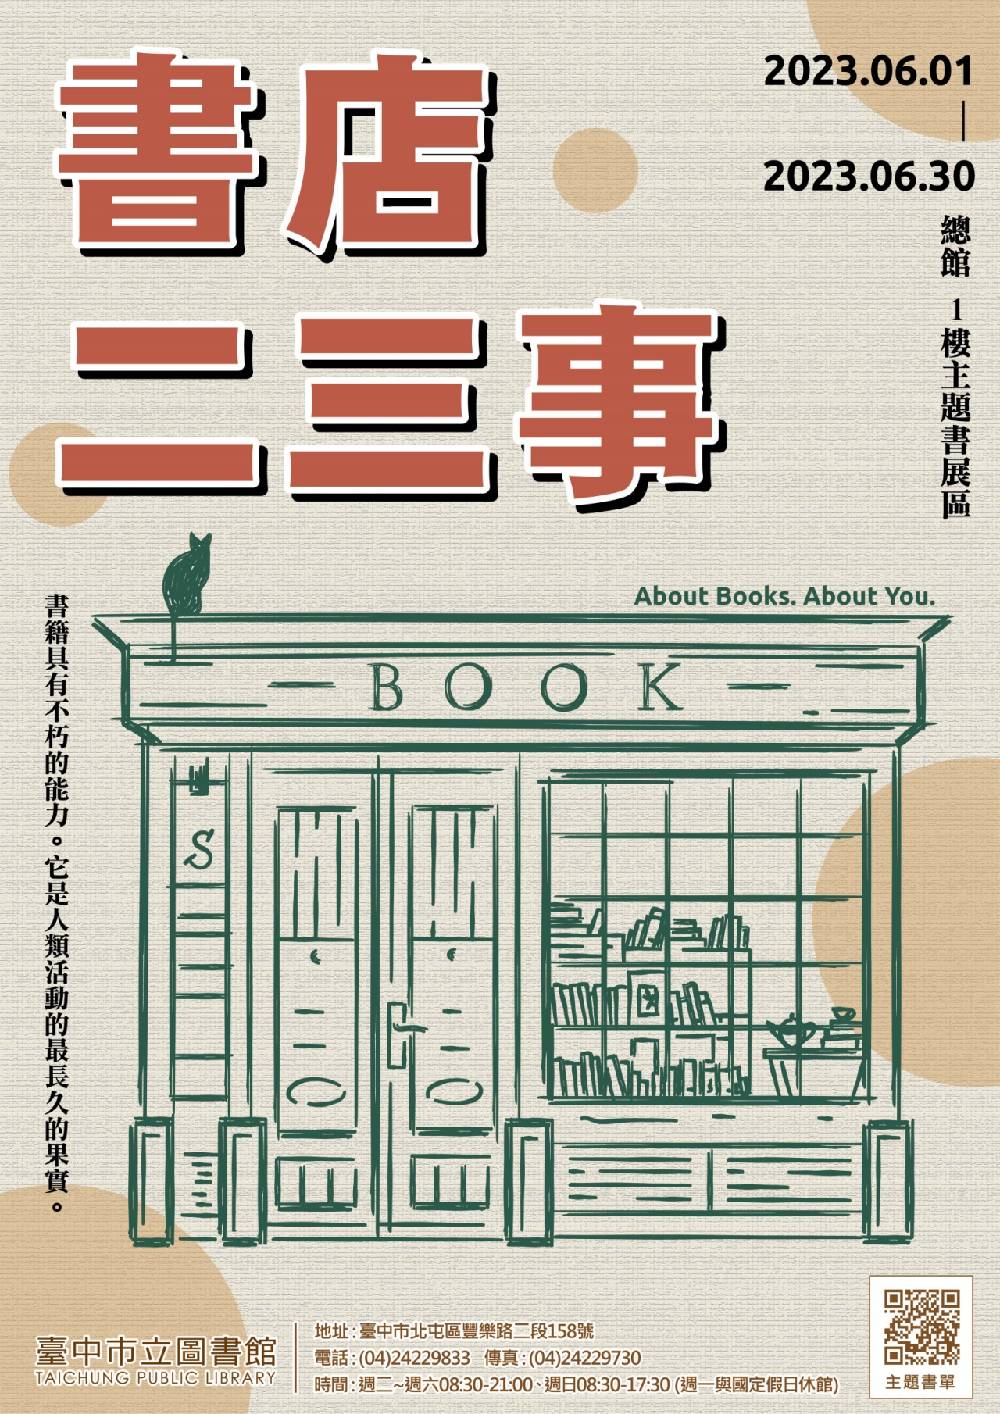 中市圖總館6月1日起至6月底推出「書店二三事」書展